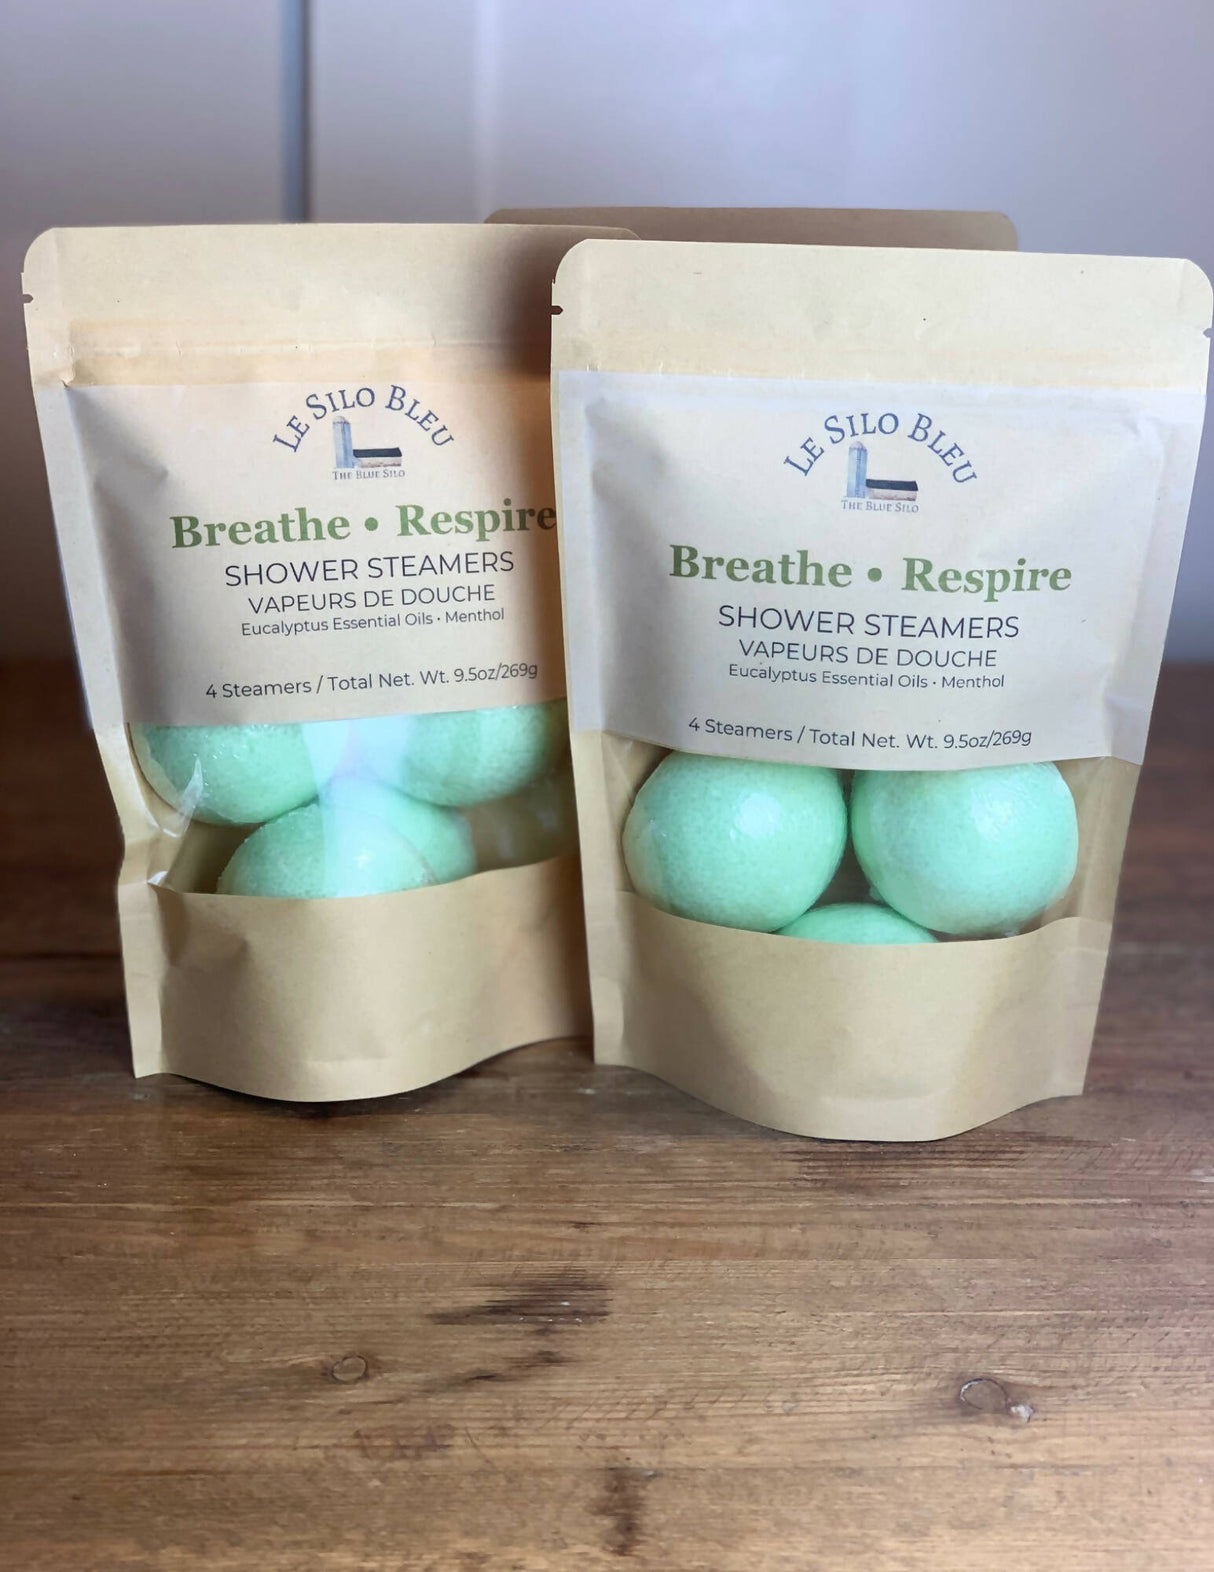 Breathe - Respire Shower Steamers